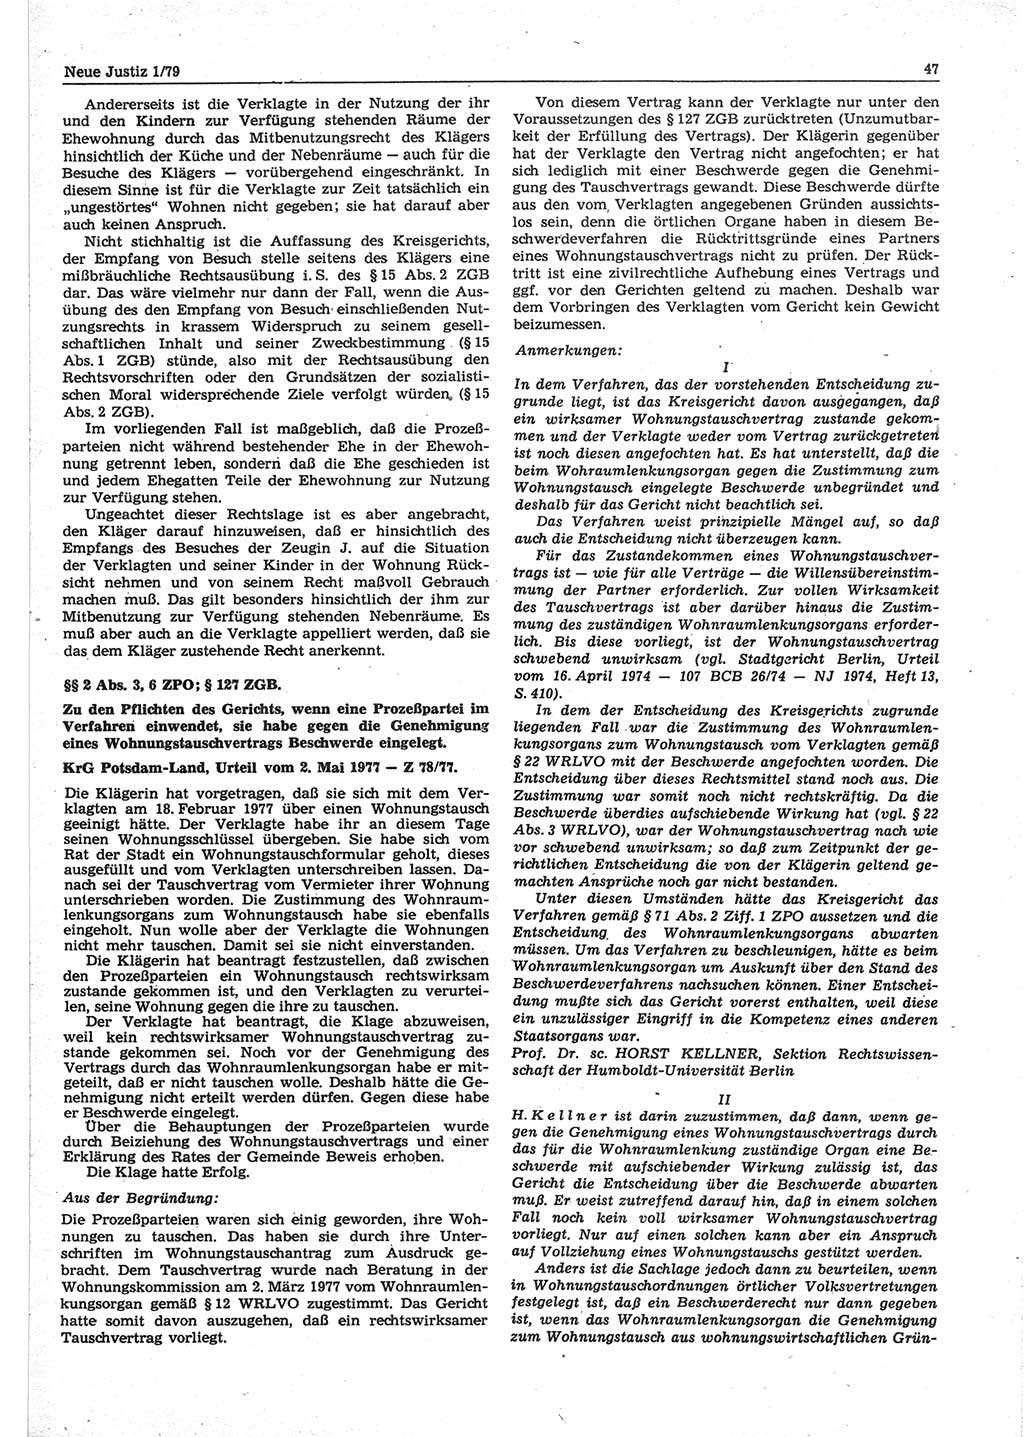 Neue Justiz (NJ), Zeitschrift für sozialistisches Recht und Gesetzlichkeit [Deutsche Demokratische Republik (DDR)], 33. Jahrgang 1979, Seite 47 (NJ DDR 1979, S. 47)